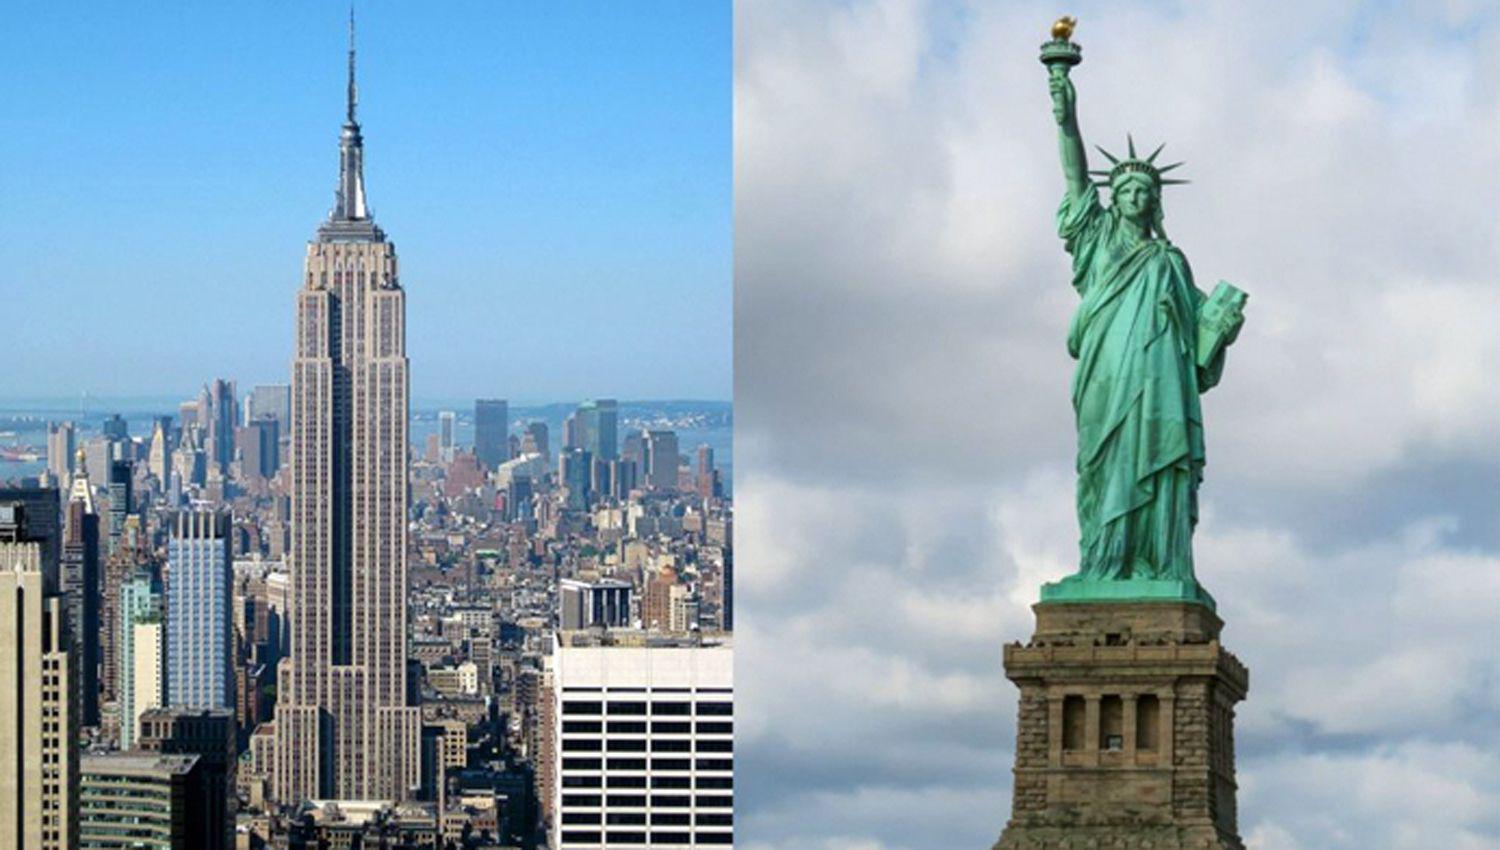 Nueva York cierra al puacuteblico la Estatua de la Libertad y el mirador del Empire State por la pandemia